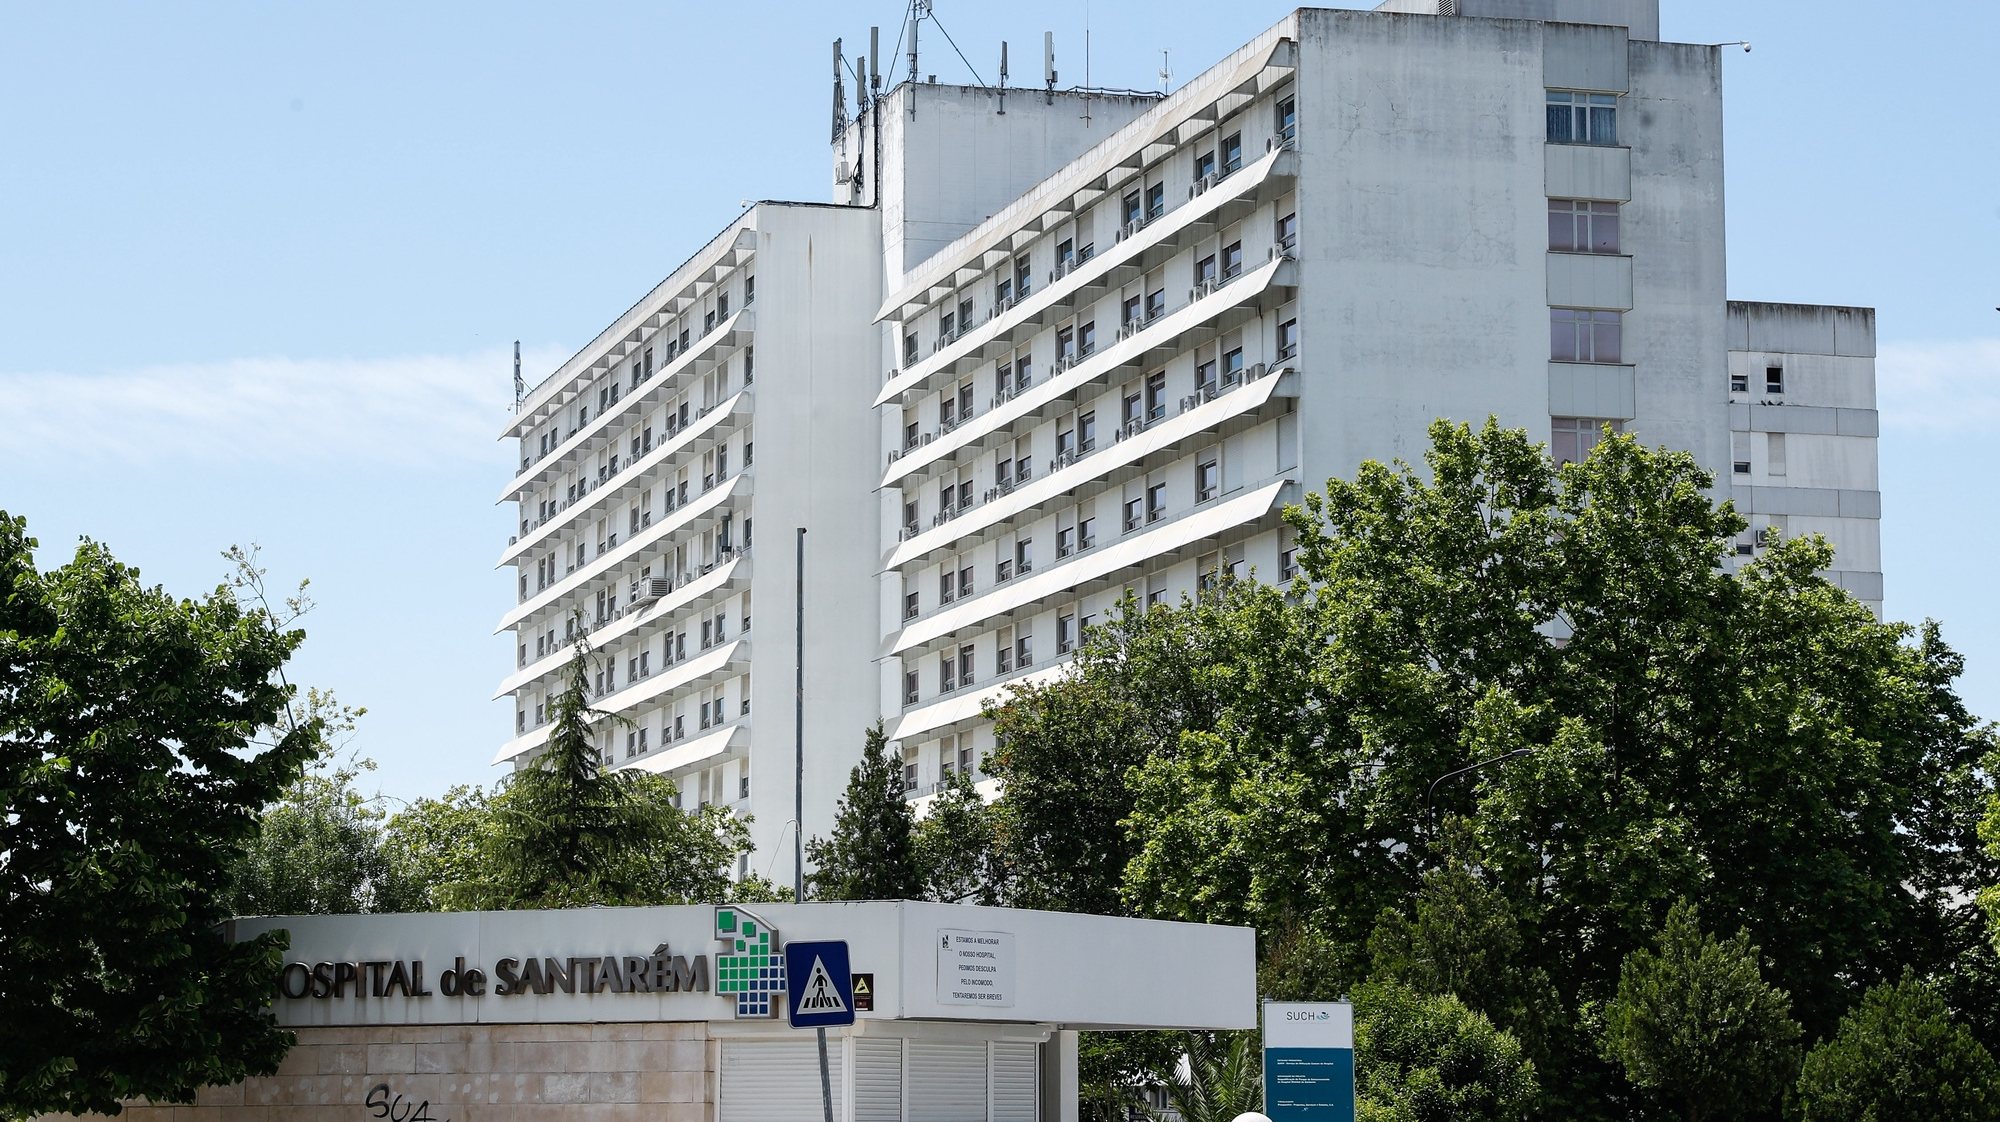 Na nota, o Hospital Distrital de Santarém alerta ainda à população para que evite ir às urgências